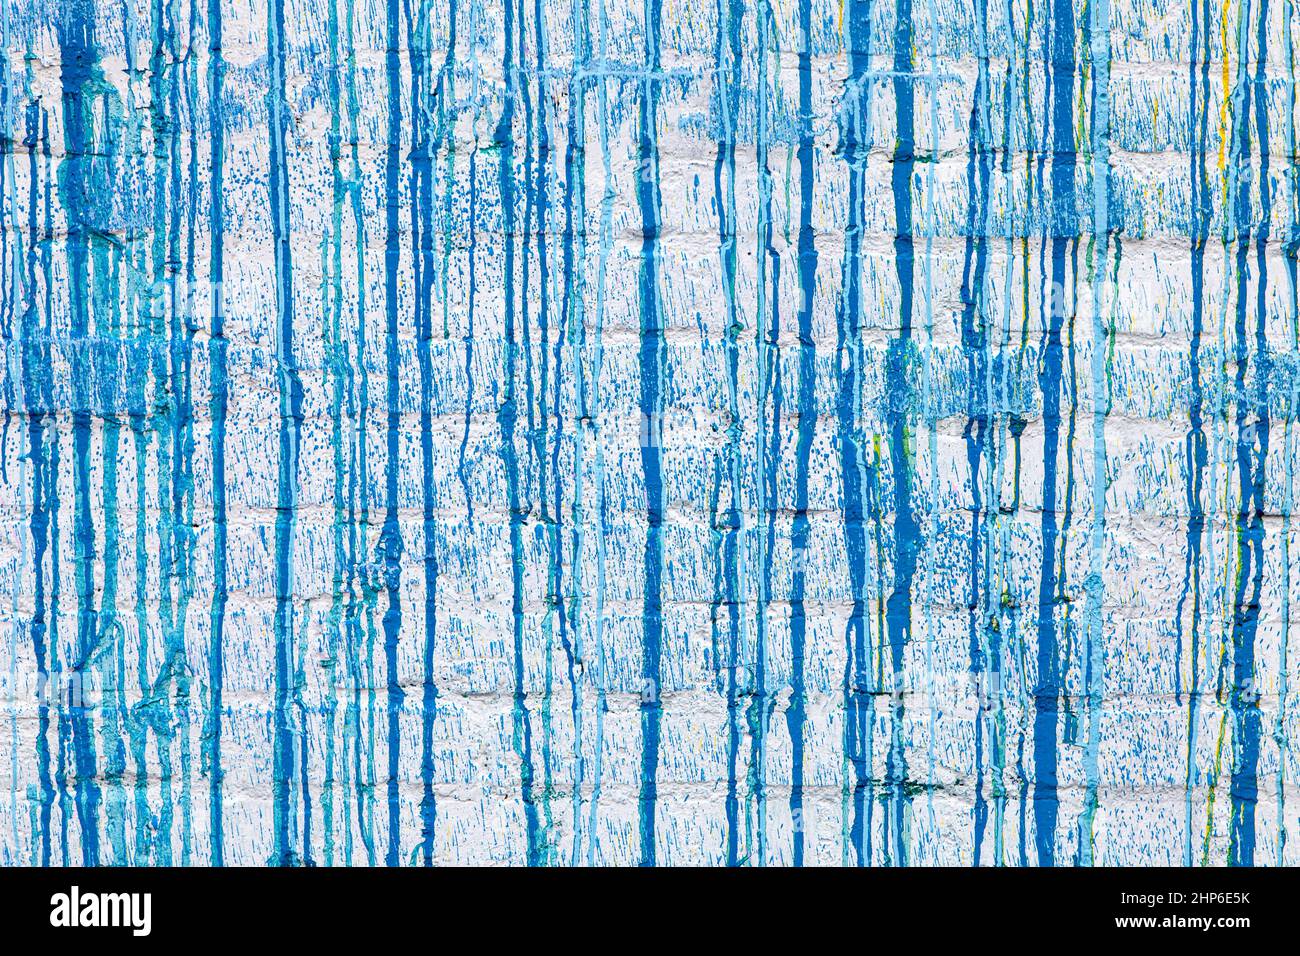 Blaue Farbe tropft auf eine weiße Wand abstrakte Grunge Farbe Hintergrundstruktur Stockfoto